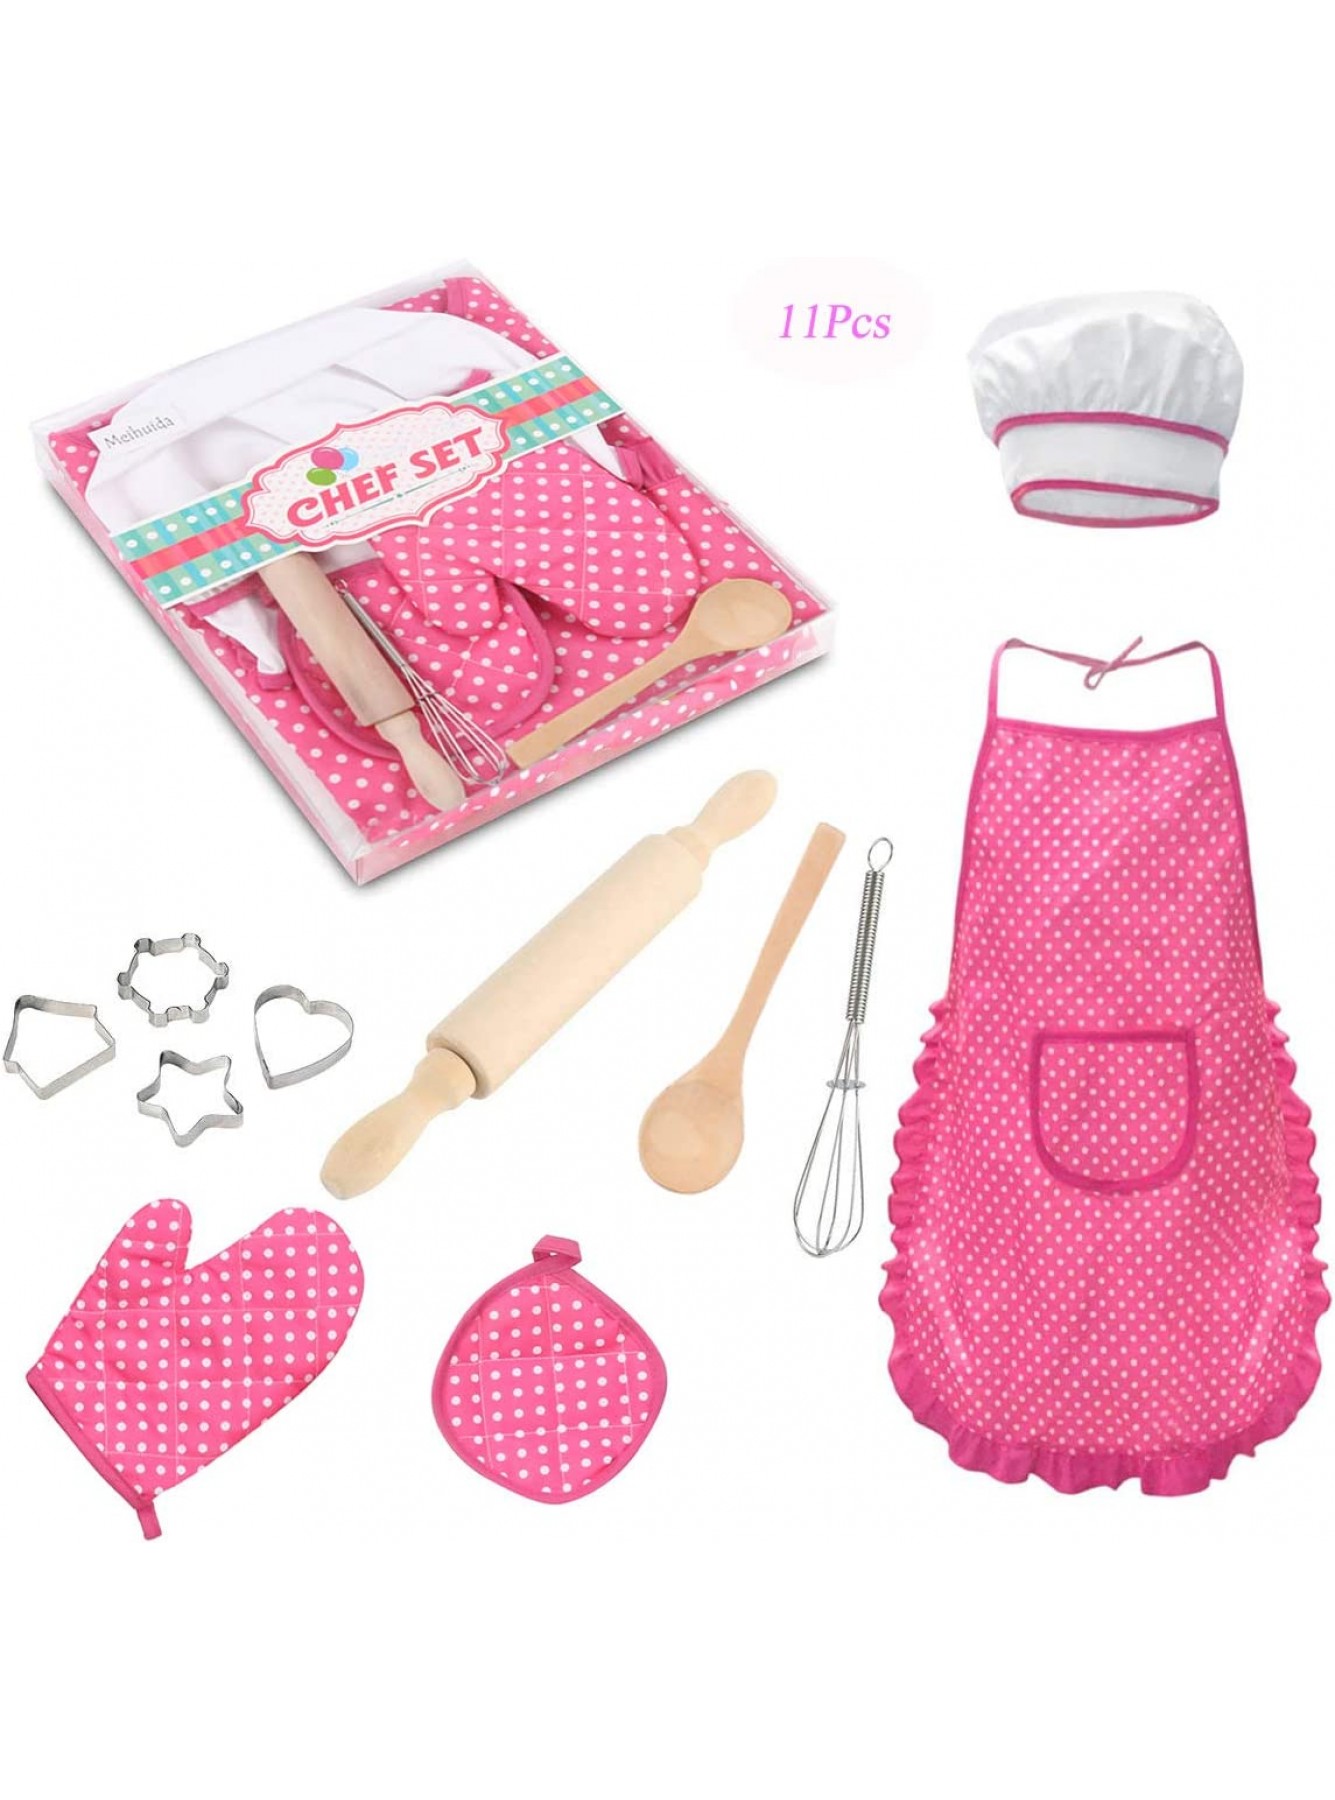 Meihuida Kinder-Koch-Set für Mädchen 11-teiliges Koch- und Back-Set für Kinder Kleinkinder Kostüm-Set mit Schürze Kochmütze Kochhandschuh und Ausstechformen rose - B07KJXLRSG